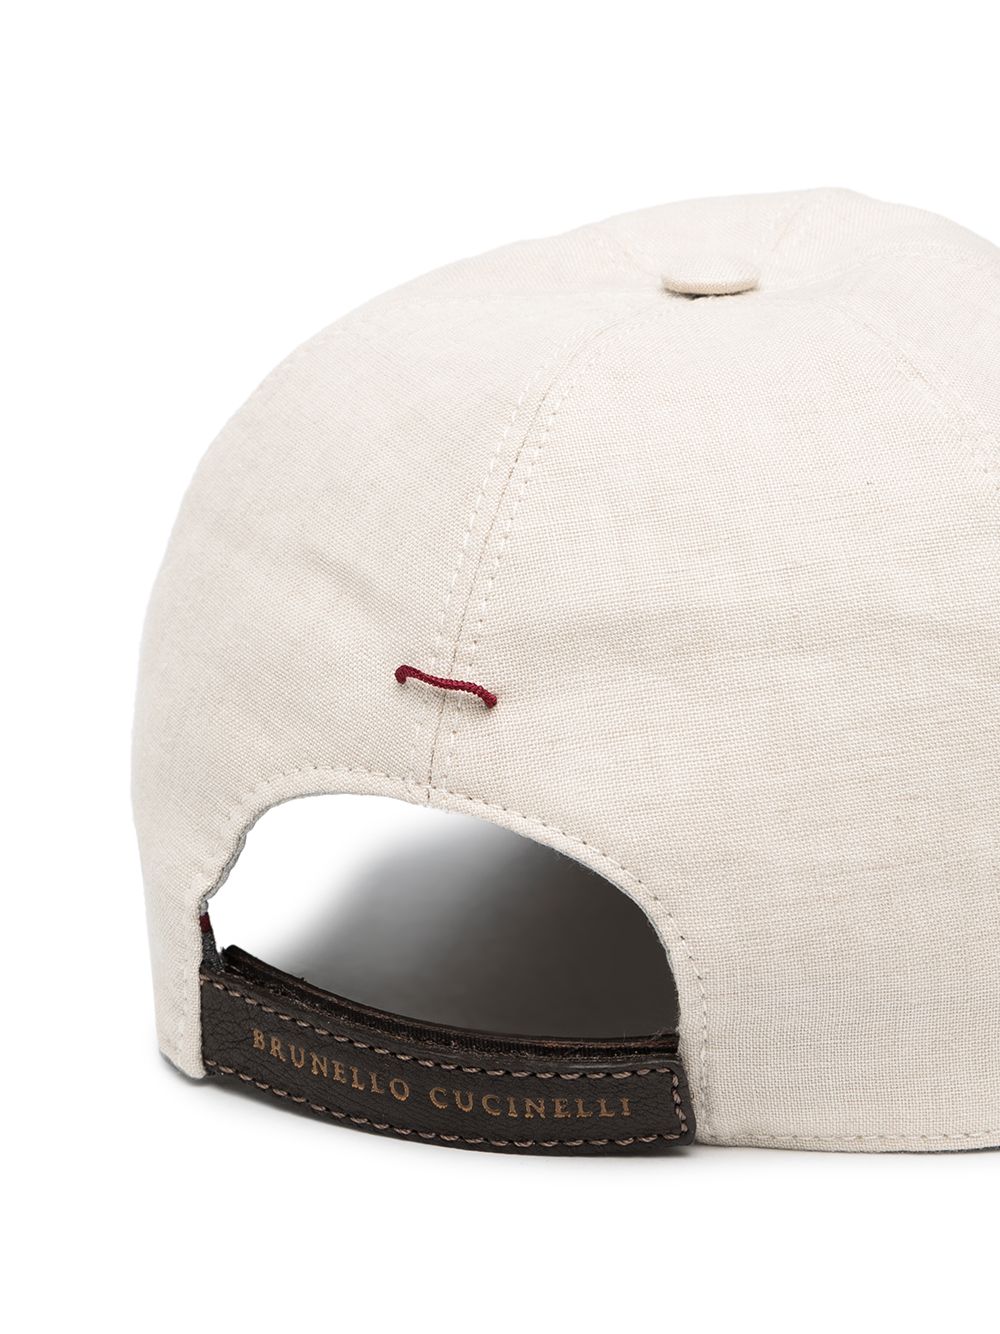 фото Brunello cucinelli кепка с вышитым логотипом